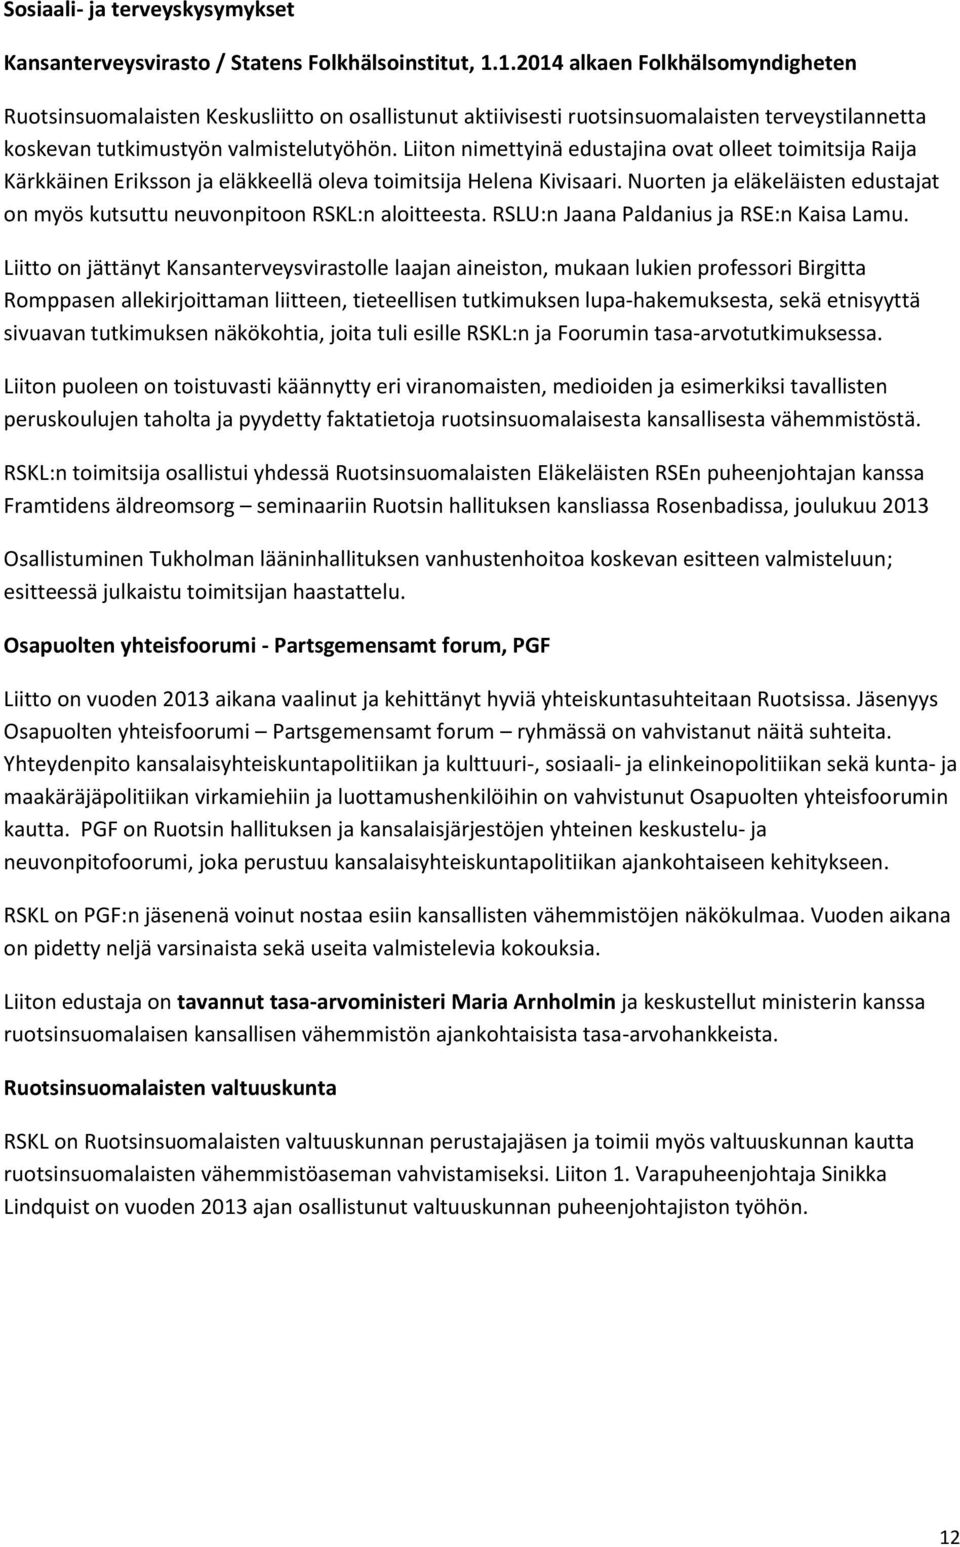 Liiton nimettyinä edustajina ovat olleet toimitsija Raija Kärkkäinen Eriksson ja eläkkeellä oleva toimitsija Helena Kivisaari.